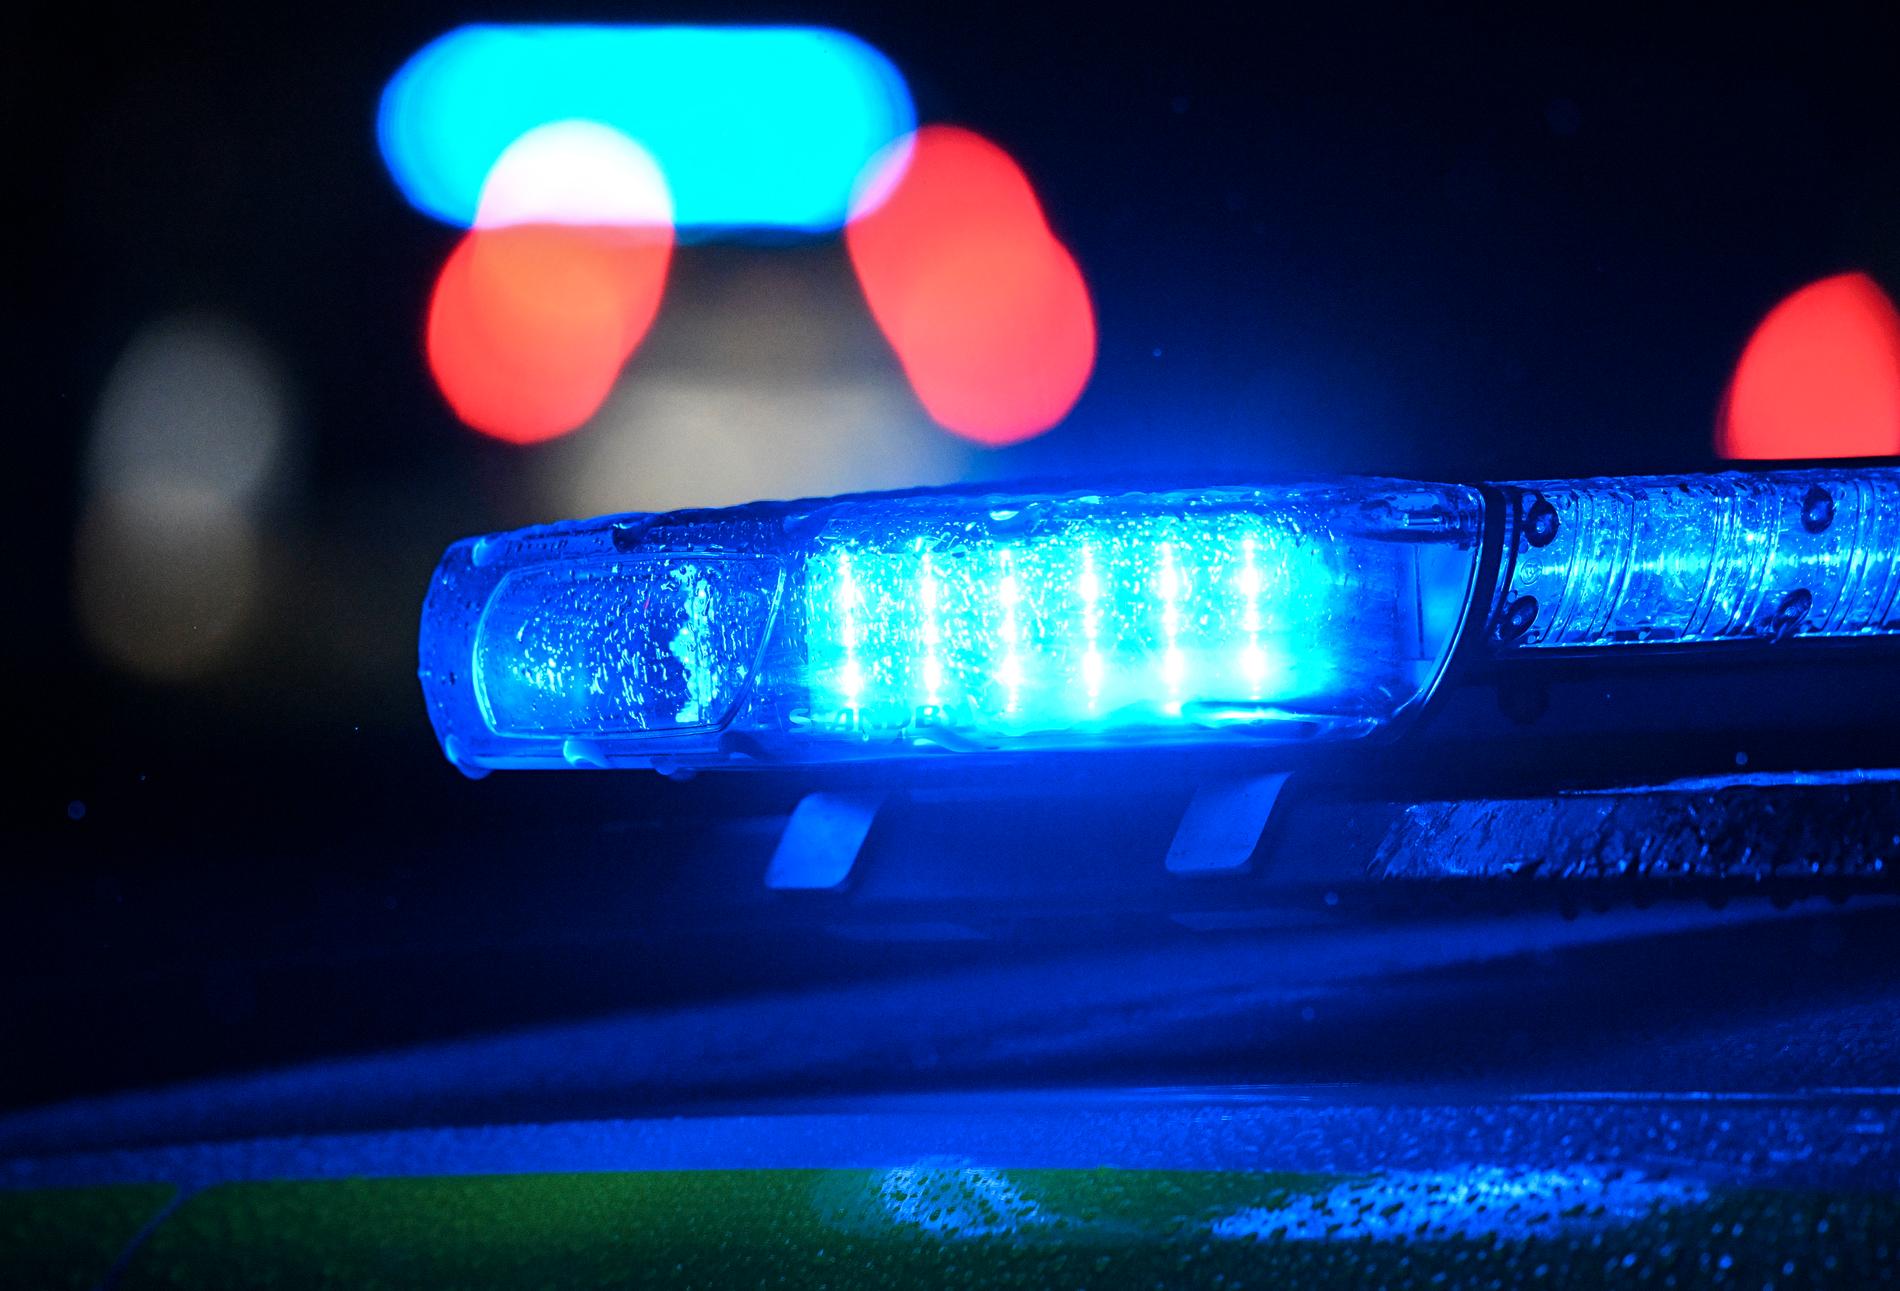 En grupp på omkring tio personer har rånat en ensam man i 18-årsåldern i centrala Göteborg. Arkivbild.